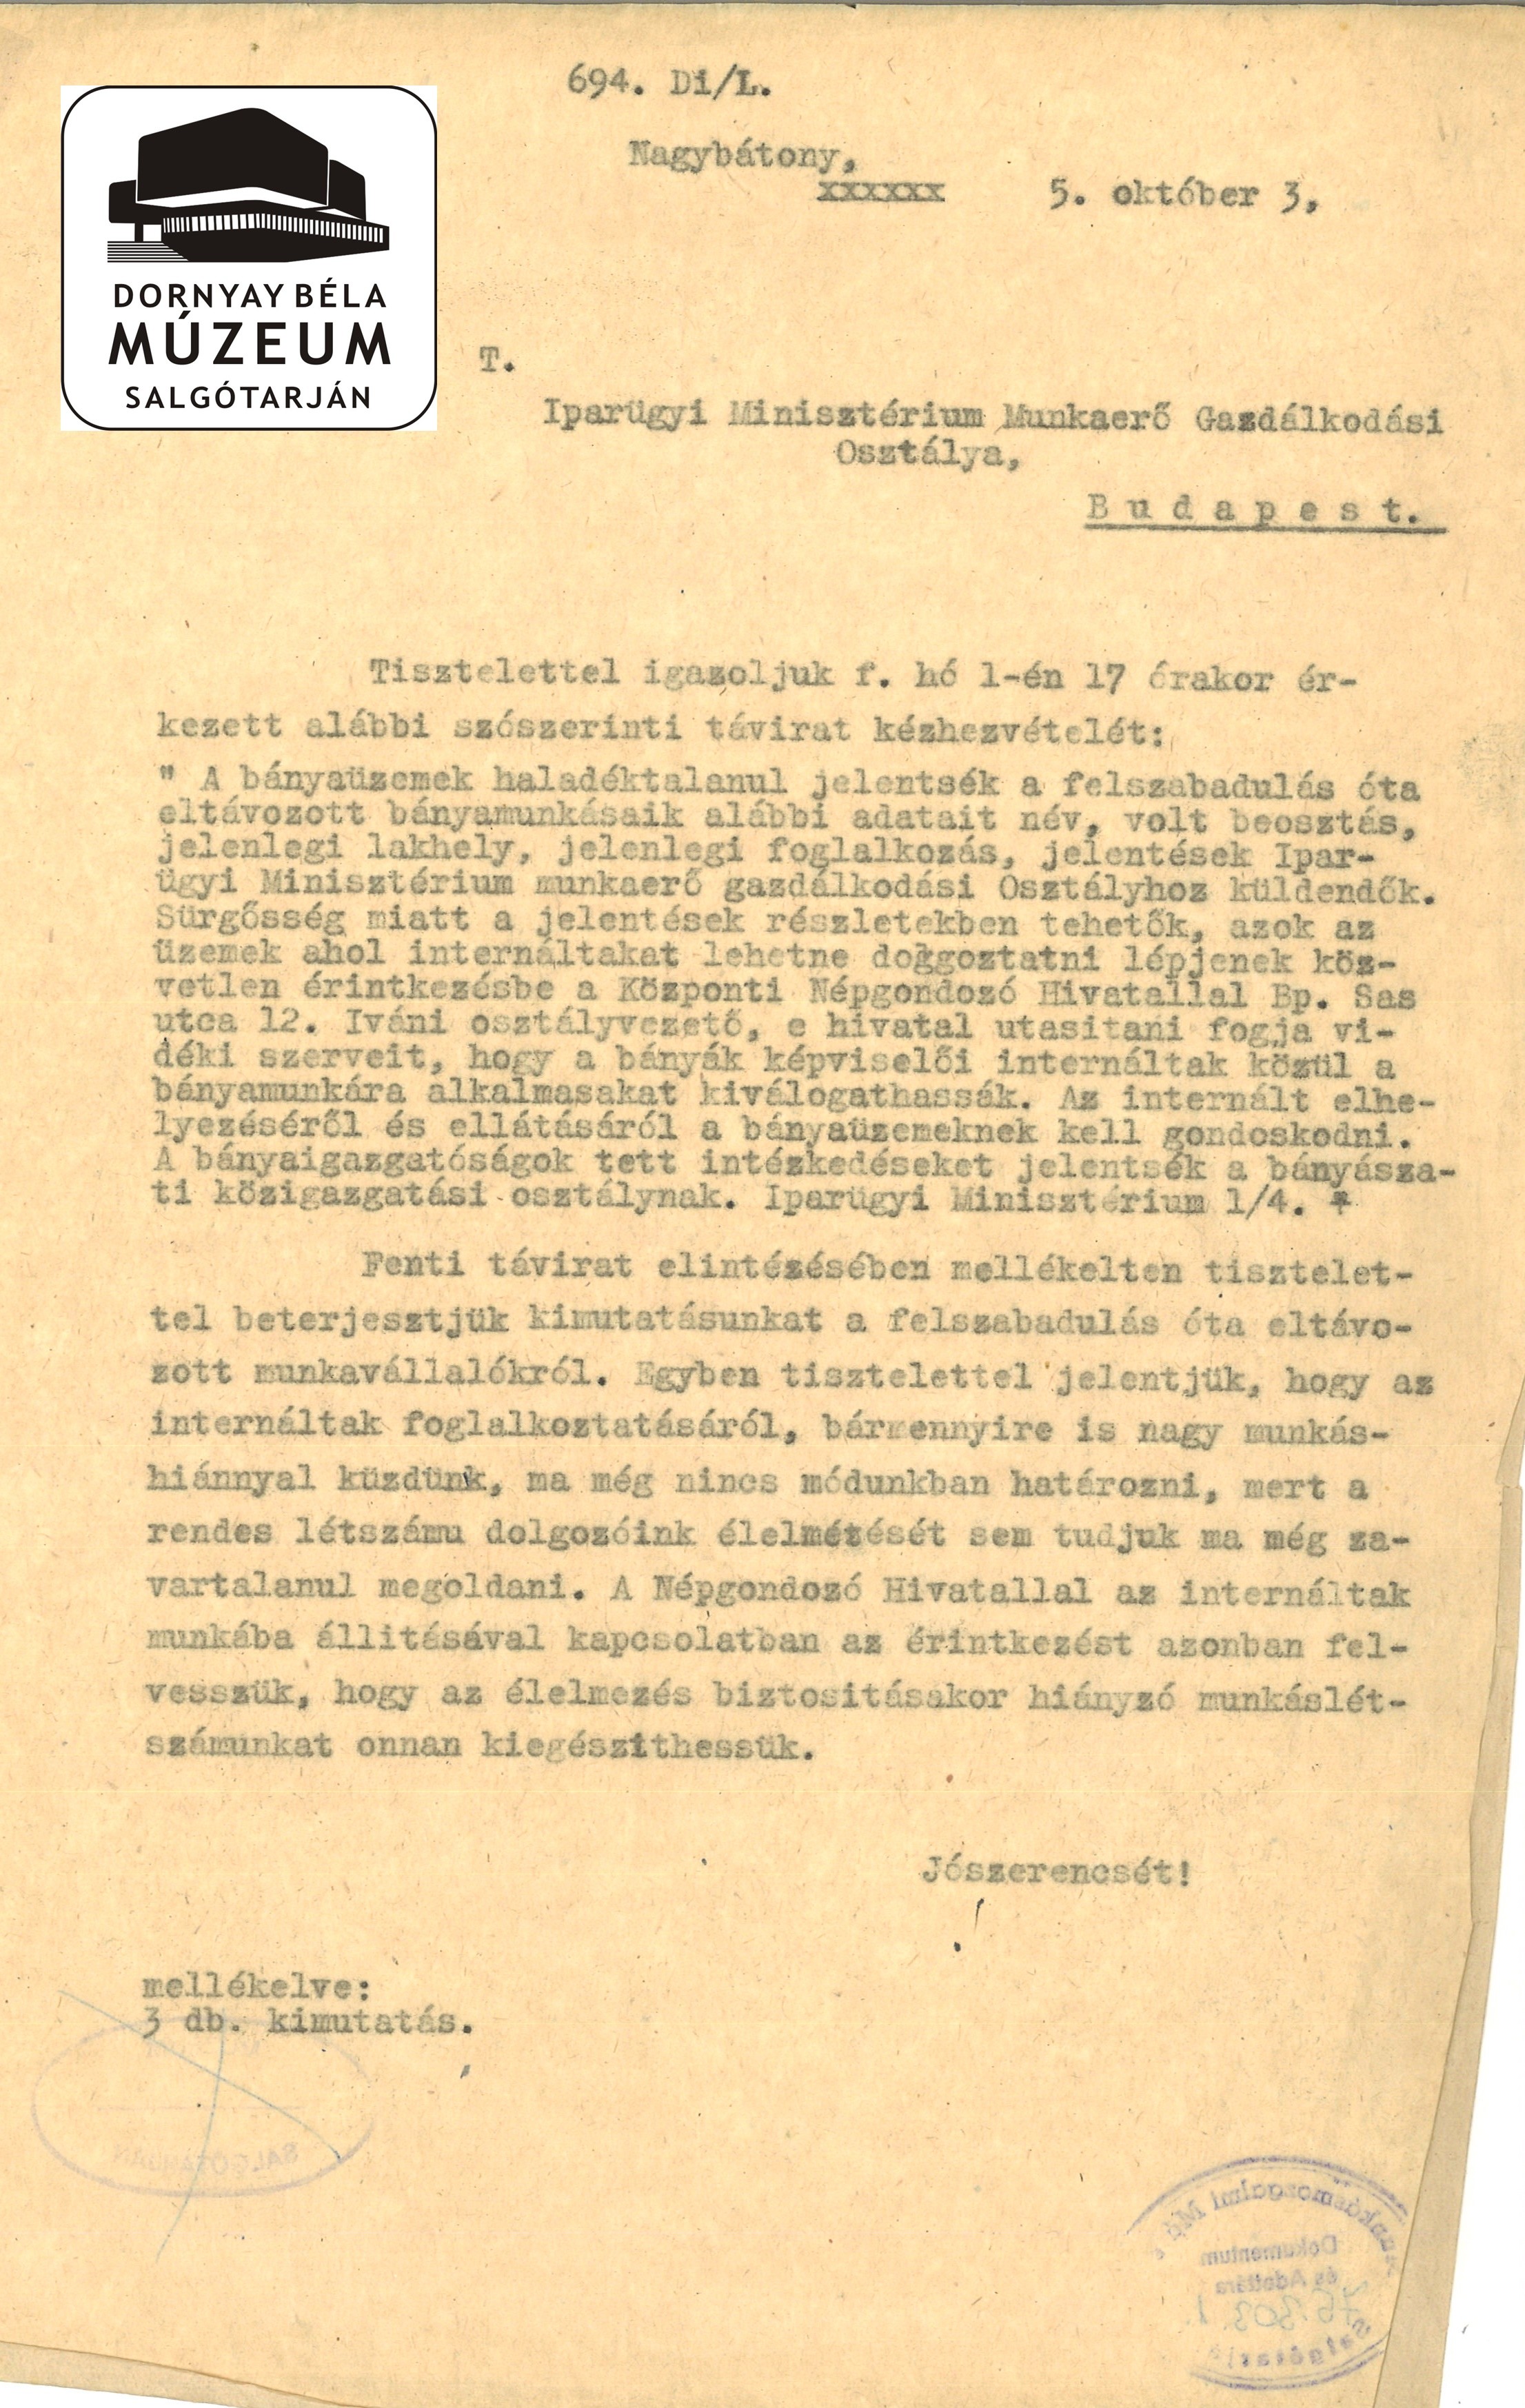 Nagybátonyi levél Iparügyi Miniszt-hez az internáltak munkába állításáról (Dornyay Béla Múzeum, Salgótarján CC BY-NC-SA)